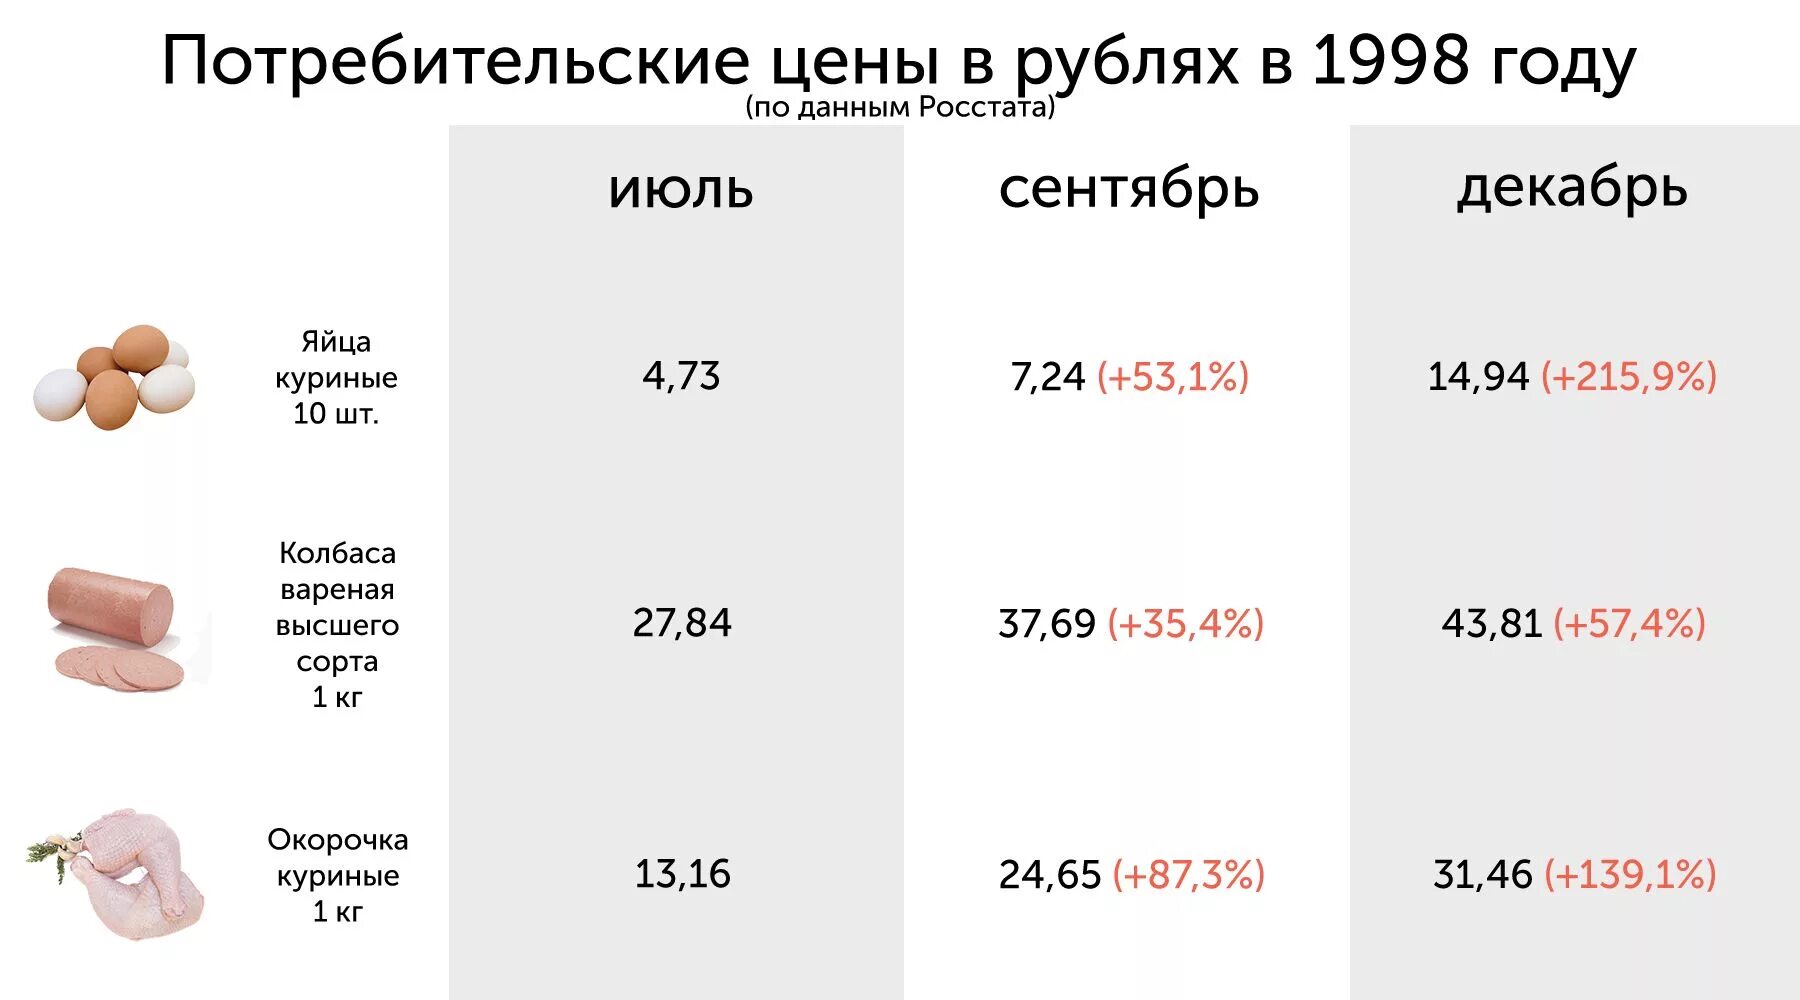 Цена булочки 5 рублей сколько стоят 3. Цены 1998 года в России на продукты. Стоимость продуктов в 1998 году. Цены в 1998 году. Стоимость хлеба в 1997 году.